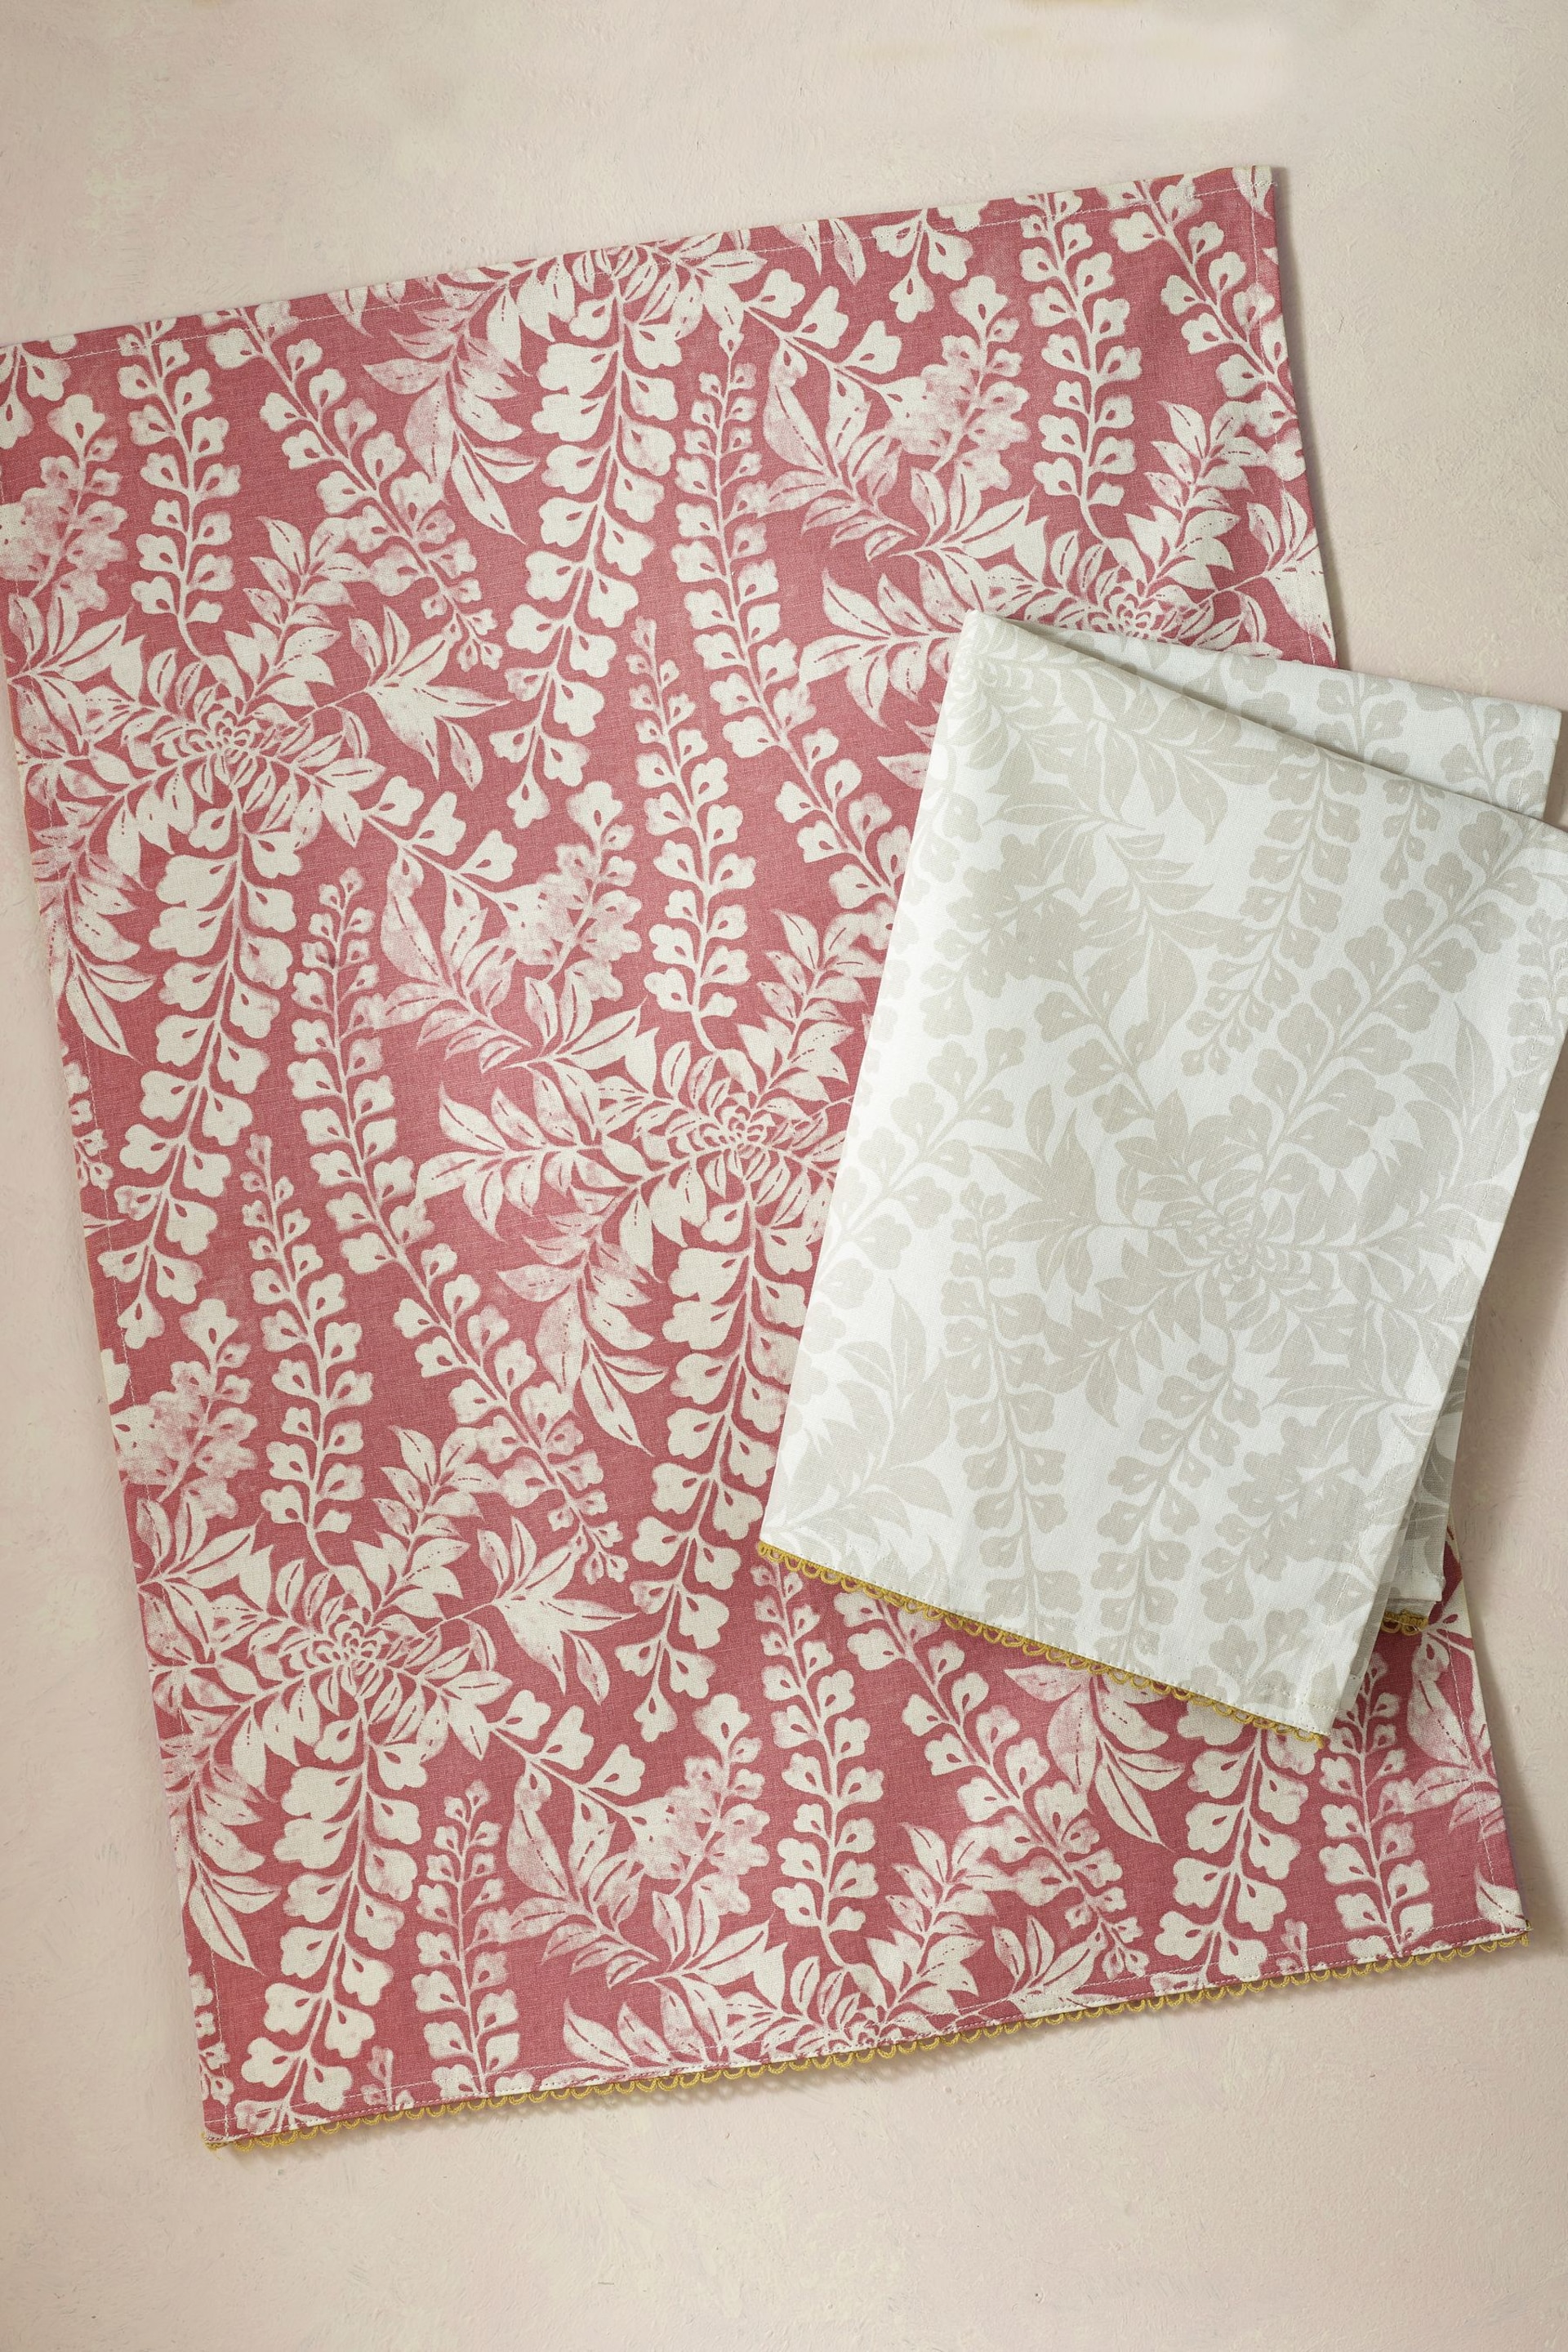 Set of 2 Natural Floral Design Tea Towels - Image 2 of 3